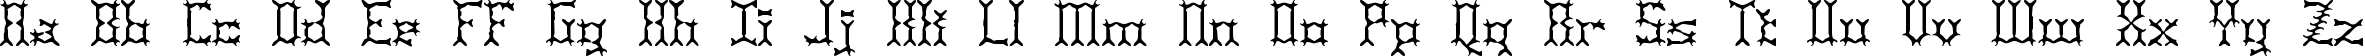 Пример написания английского алфавита шрифтом Pincers BRK